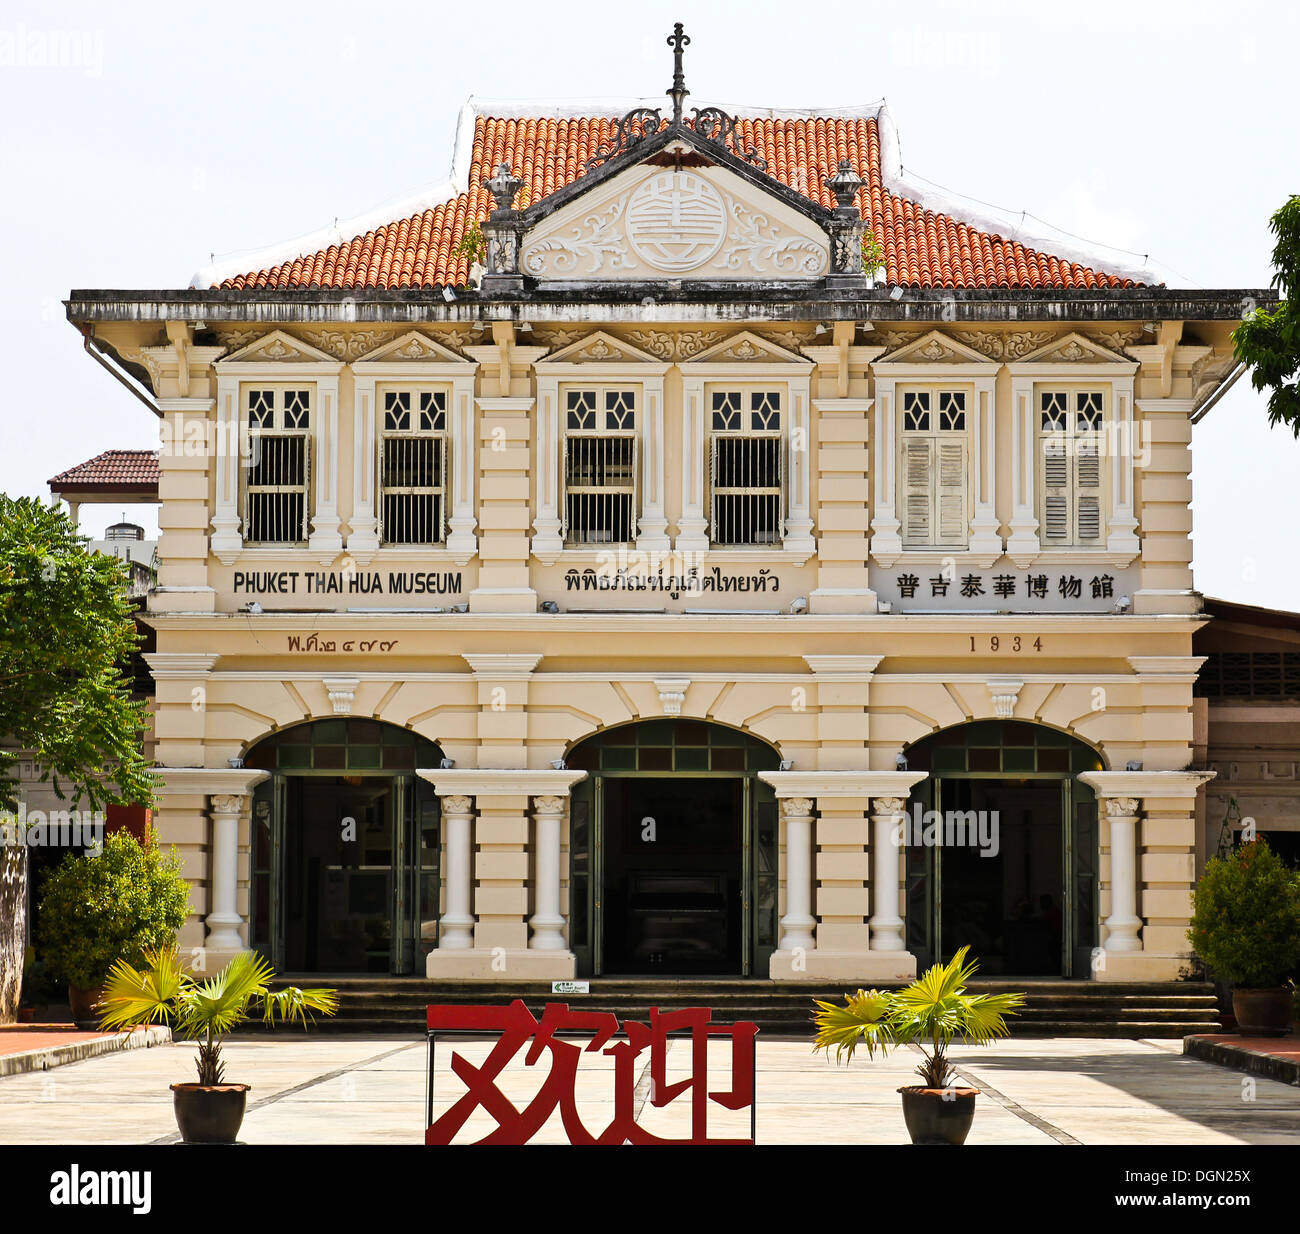 Phuket Thai Hua Schulmuseum auf einem wunderschönen kolonialen Gebäude. Stockfoto